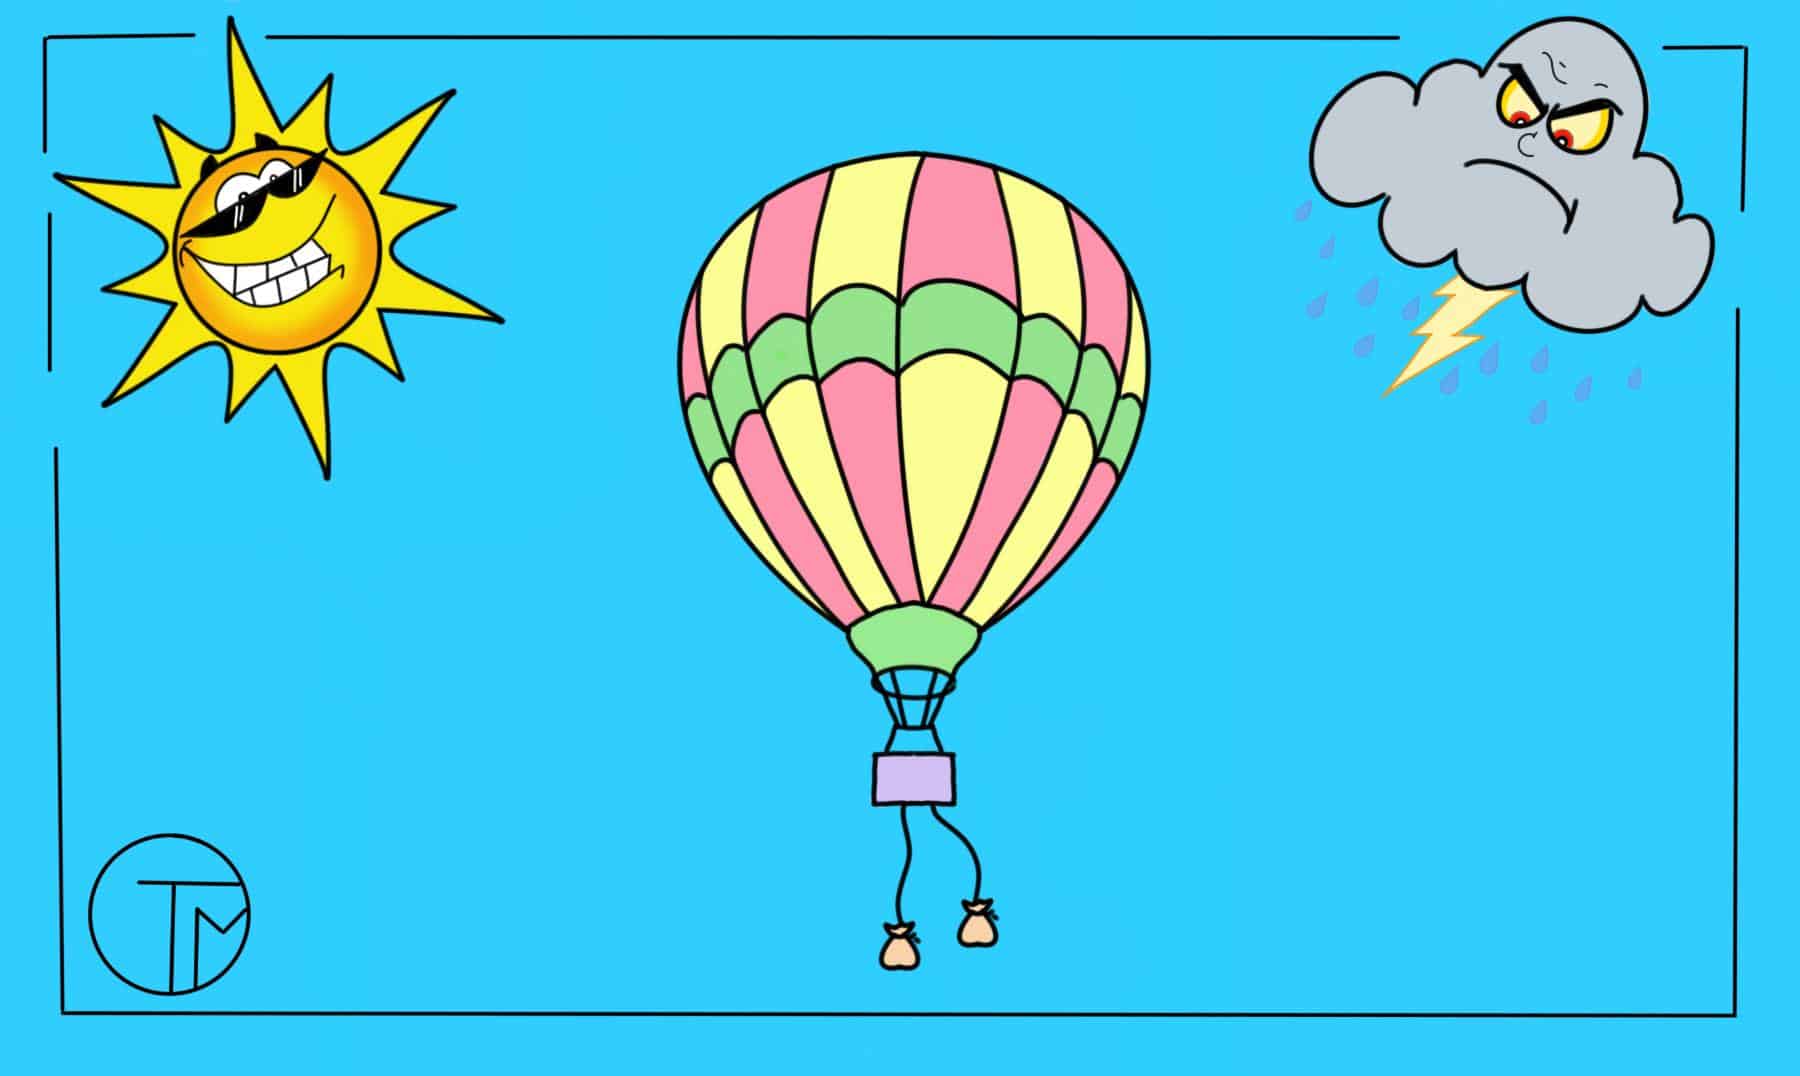 Heissluftballon mit Sandsäcken, lachender Sonne und böser Gewitterwolke